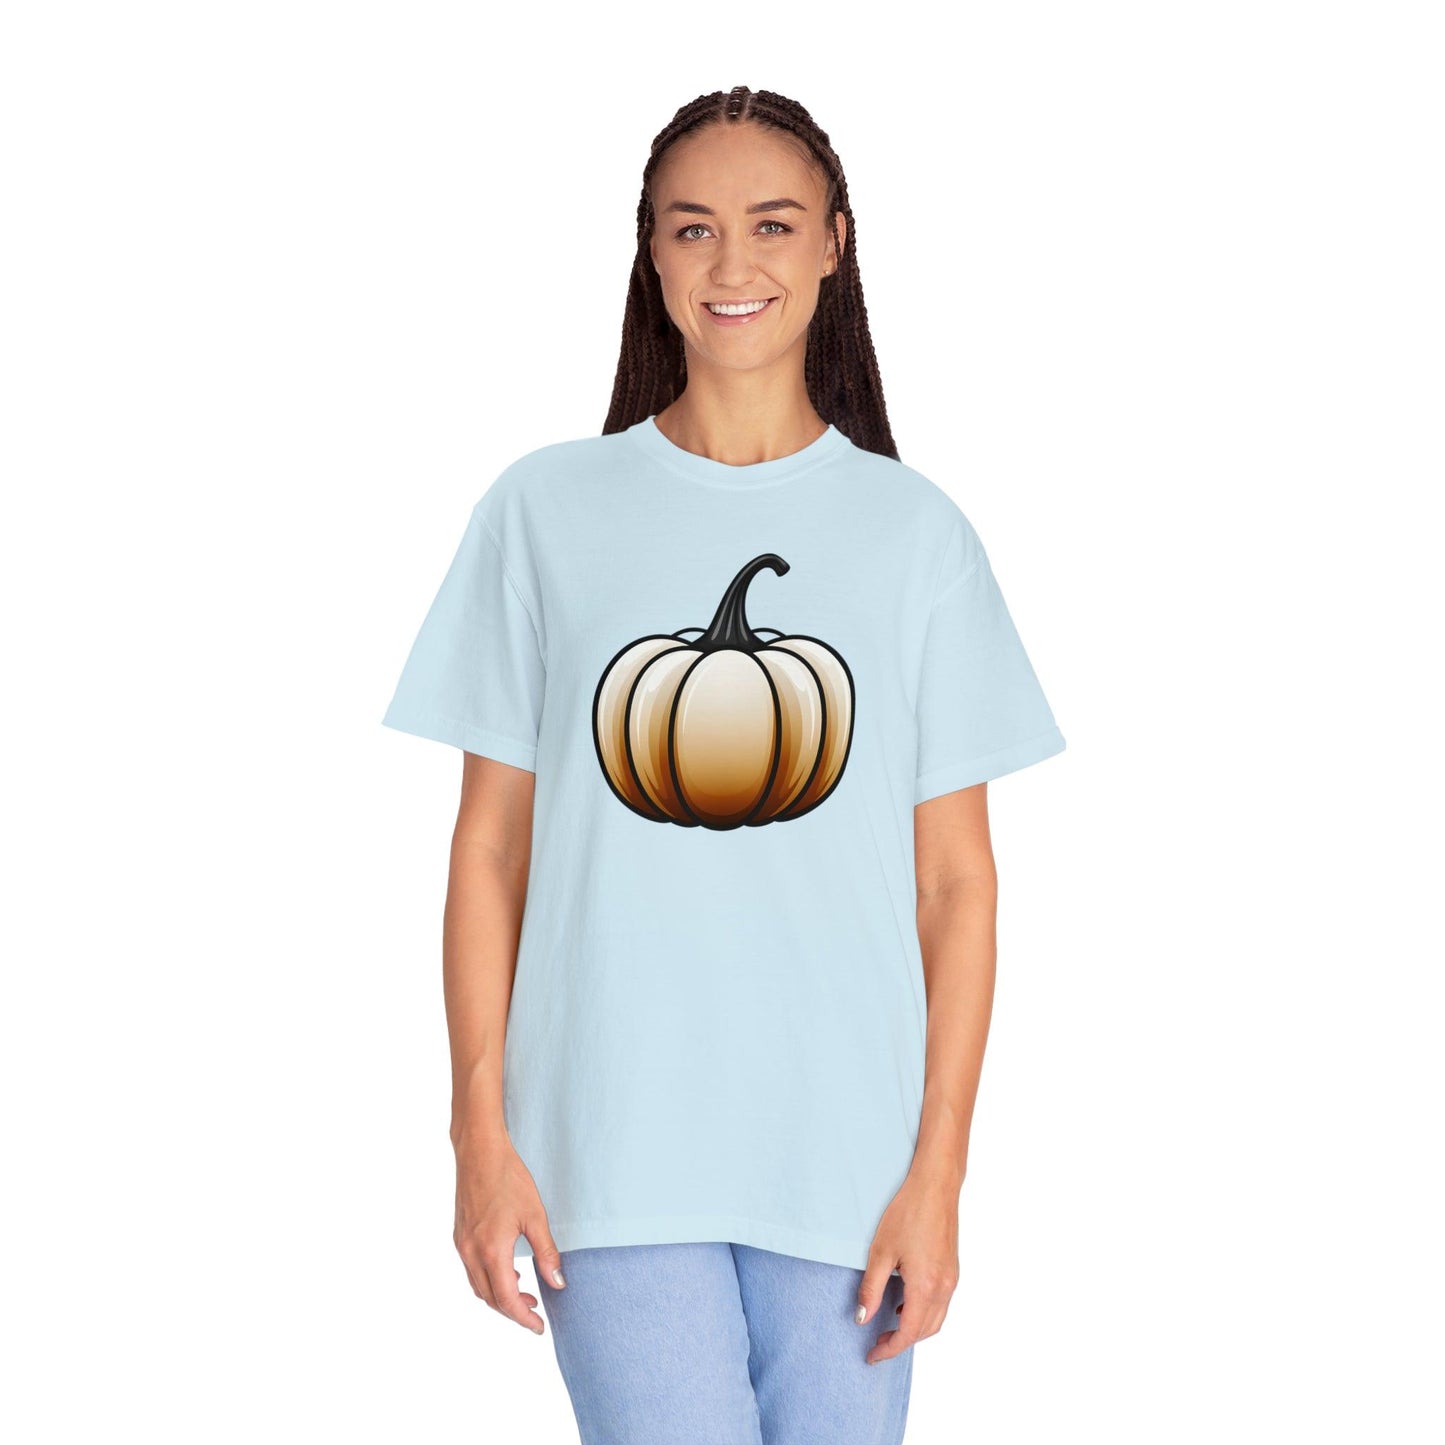 Pumpkin Shirt Halloween Shirt Fall Gift Halloween Costume Pumpkin T Shirt - Cute Pumpkin Tee Fall Shirt Halloween Gift Pumpkin Lover Shirt - Giftsmojo